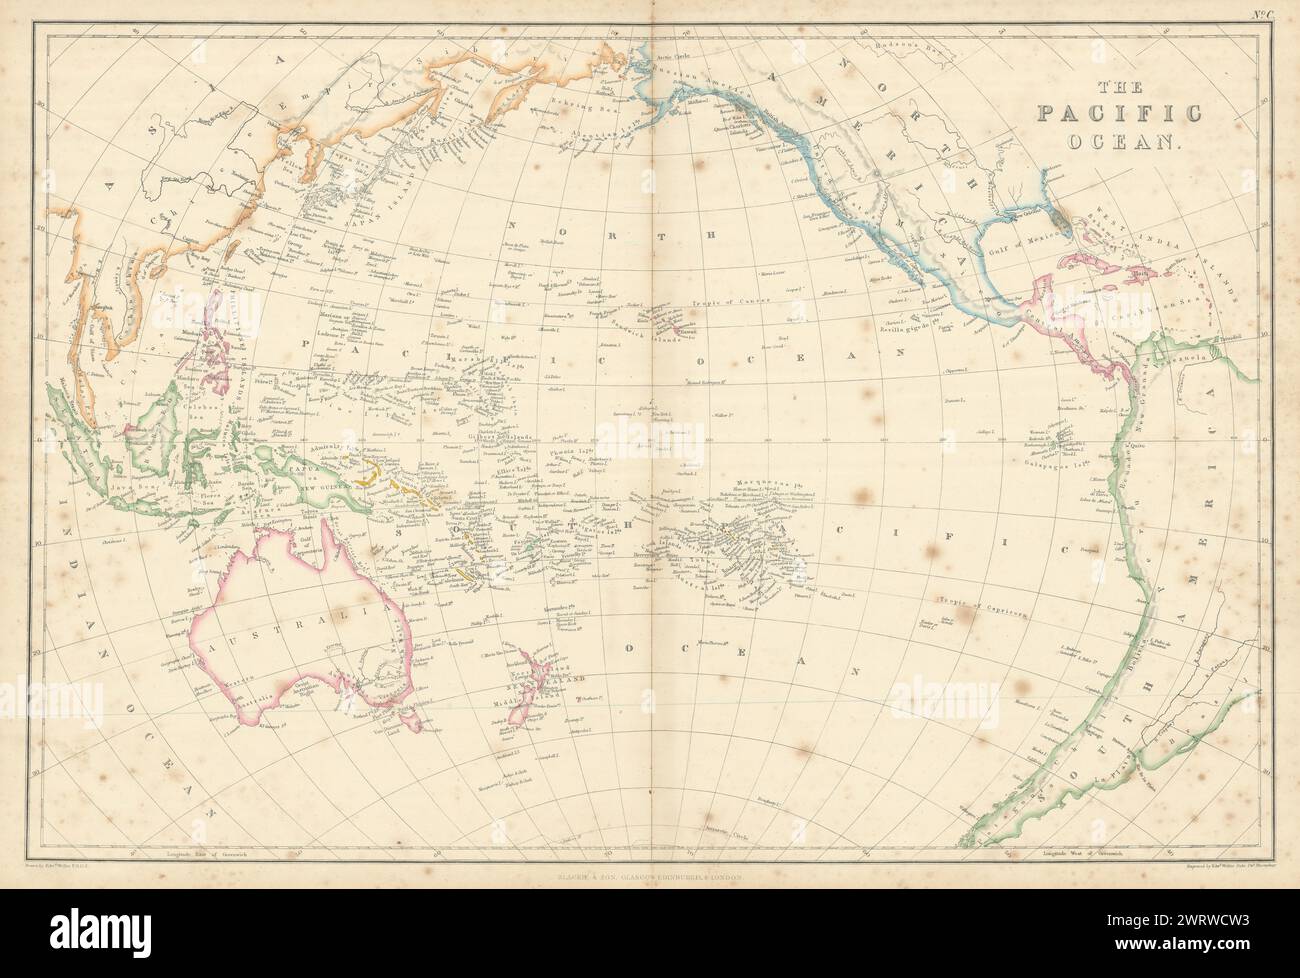 L'océan Pacifique par Edward Weller. Polynesia Micronesia Melanesia 1860 carte Banque D'Images